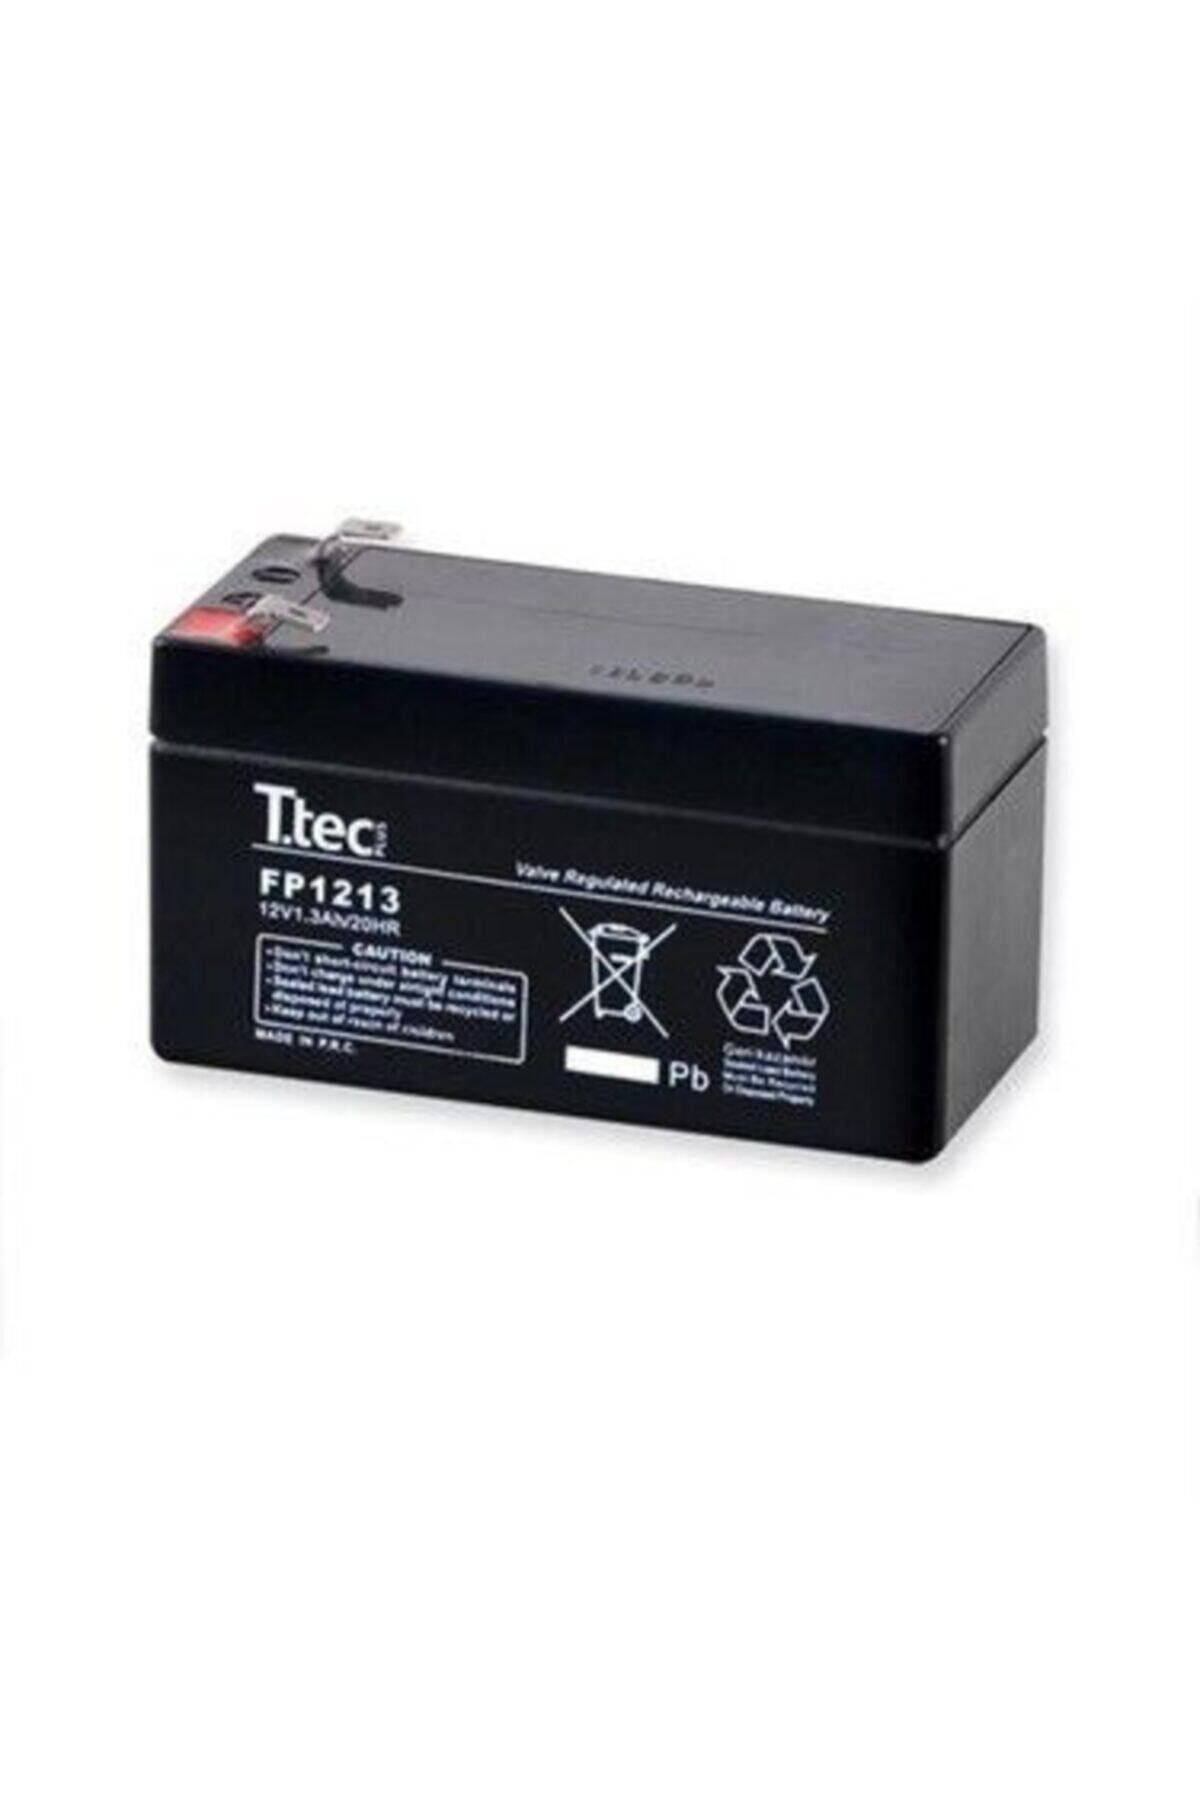 Ttech Ttec 12 Volt 1.3 Amper Bakımsız Kuru Akü Elektronik Cihaz Aküsü Şarj Edilebilir Akü Siyah Renk